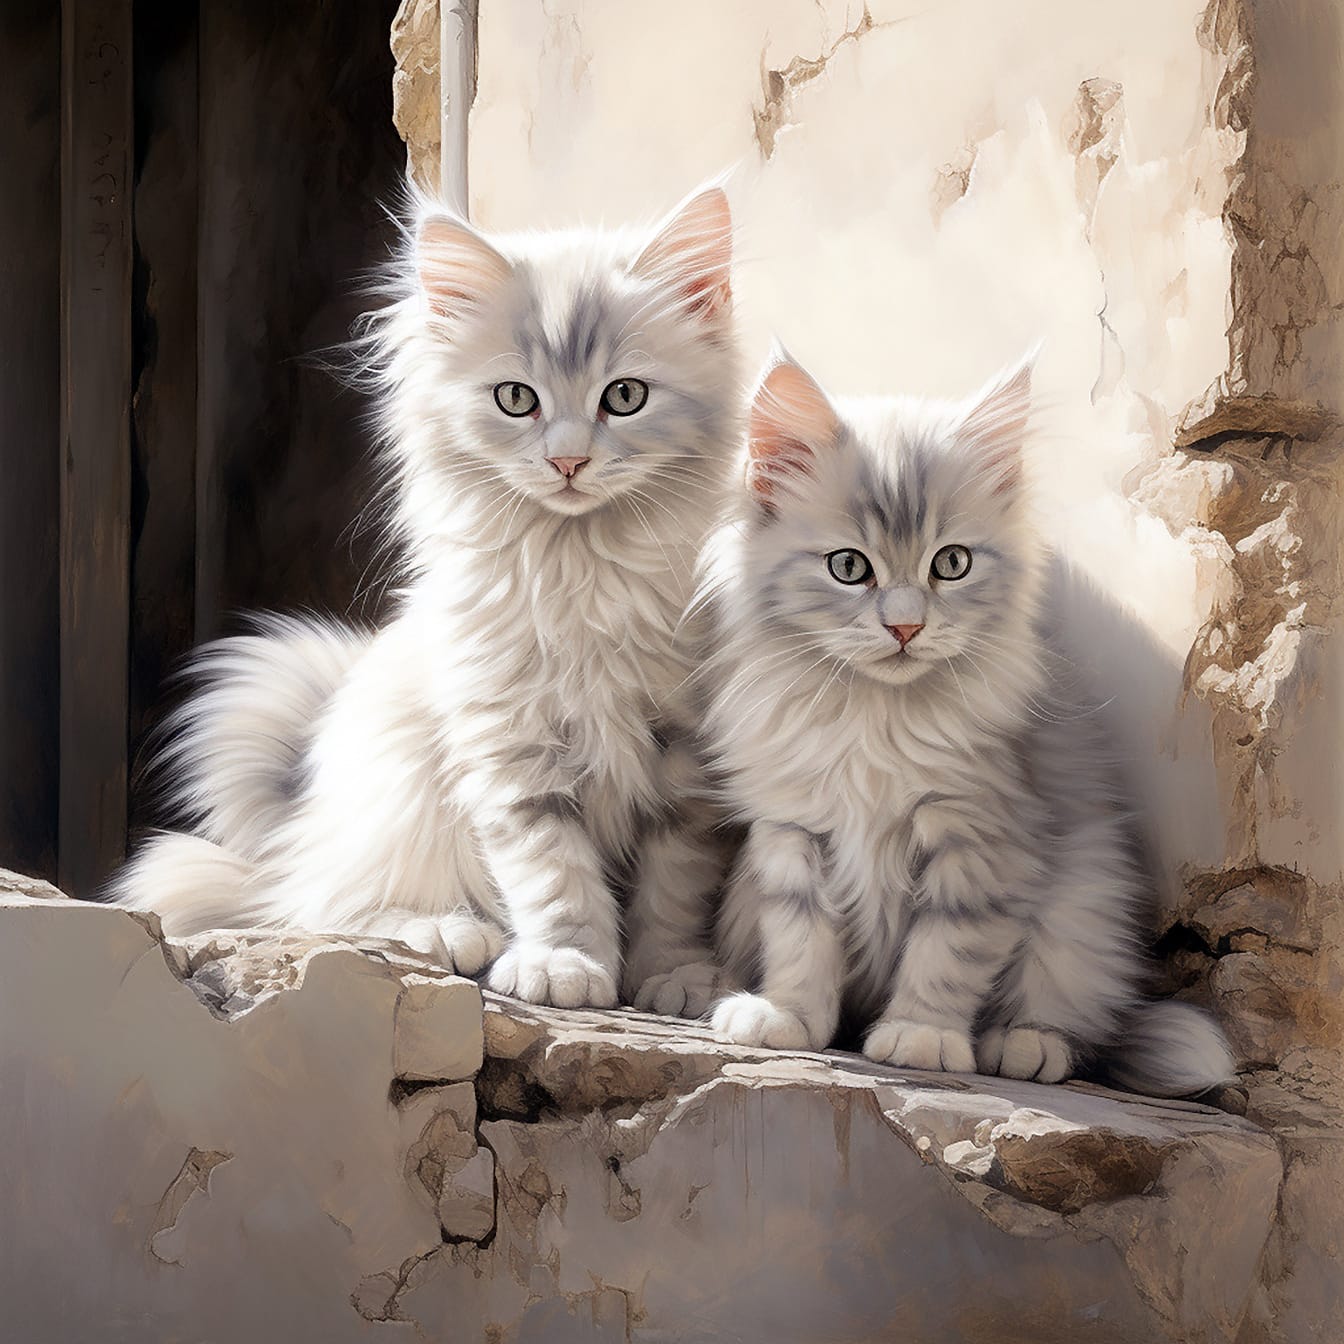 Космати сиви котенца, седнали на разлагаща се стена, реалистична илюстрация